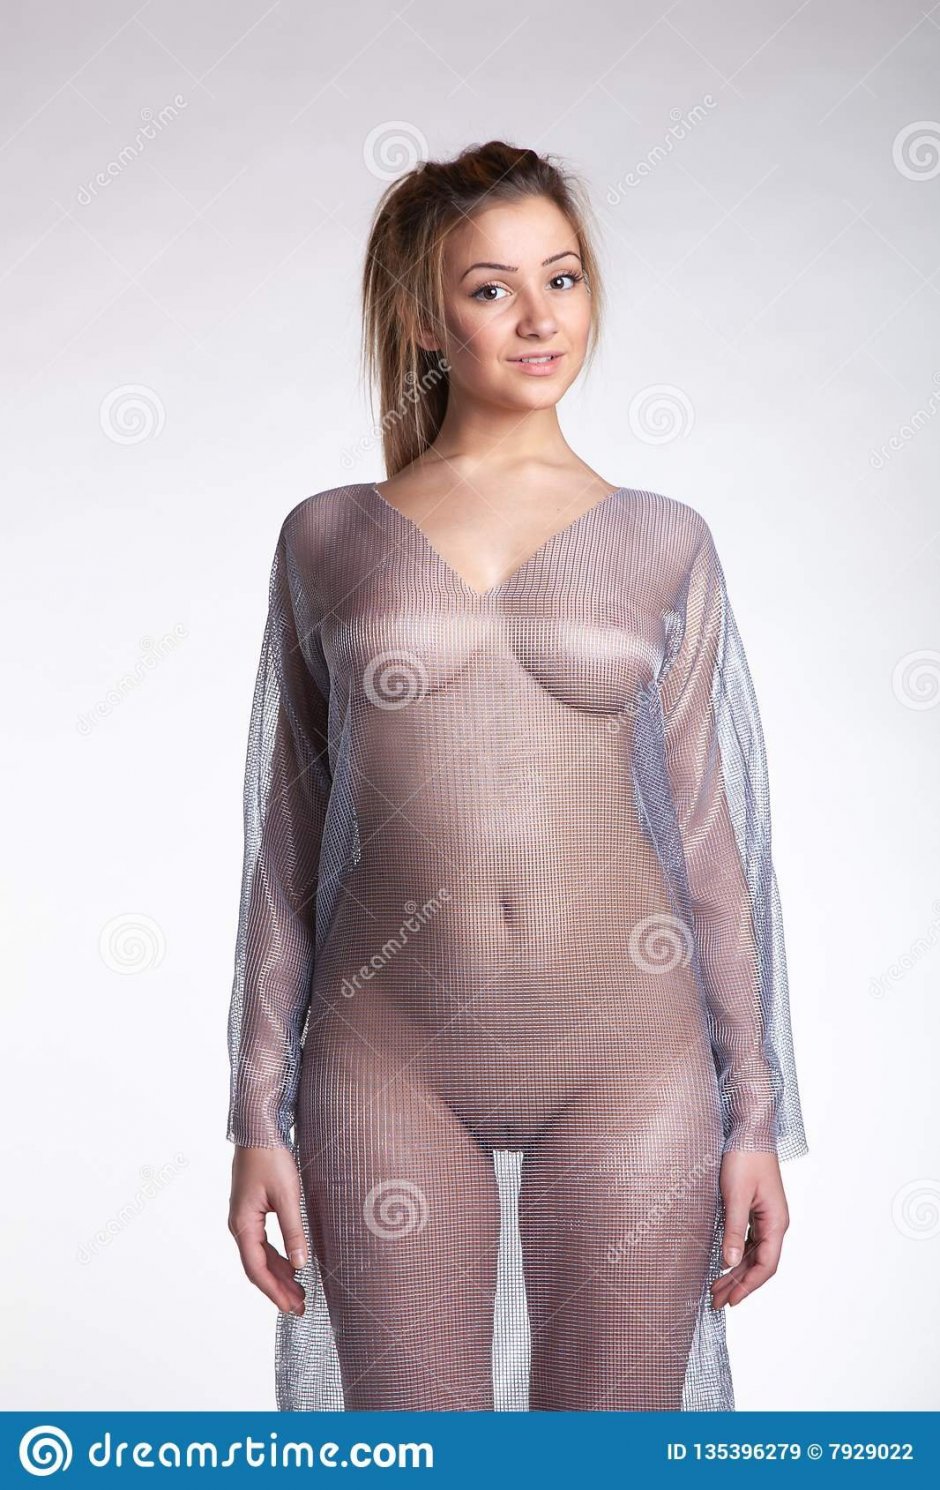 фото голая девушка в прозрачной сорочке фото 71